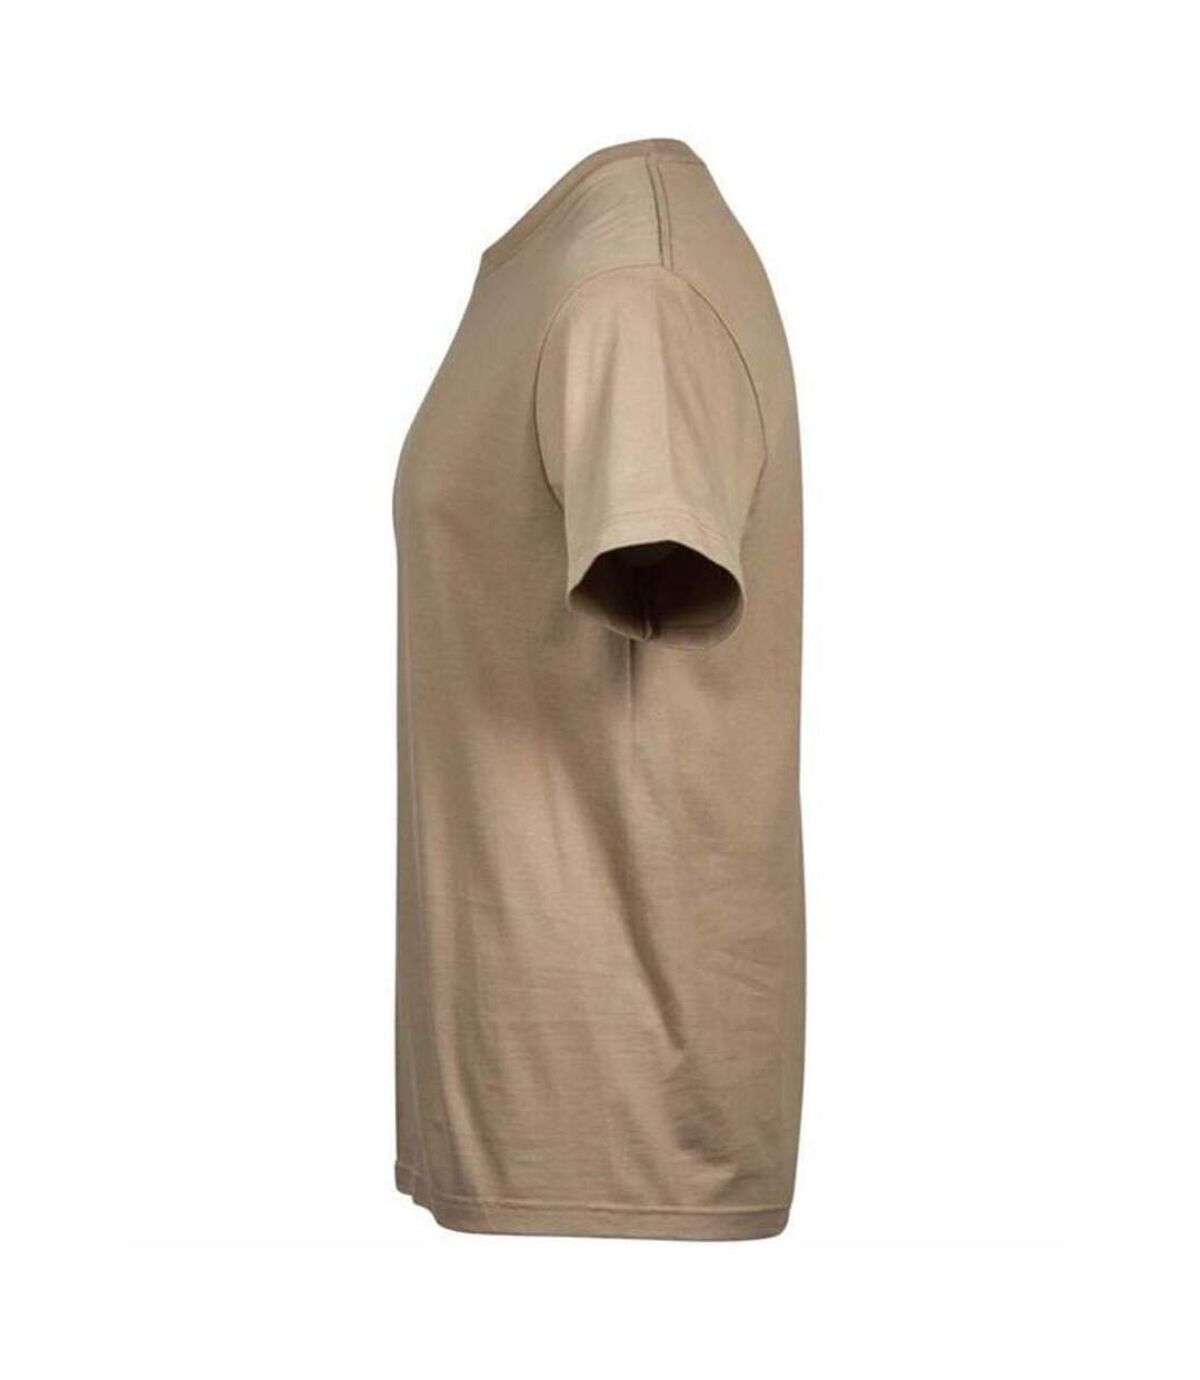 Tee Jays Mens Sof T-Shirt (Kit) - UTPC3850